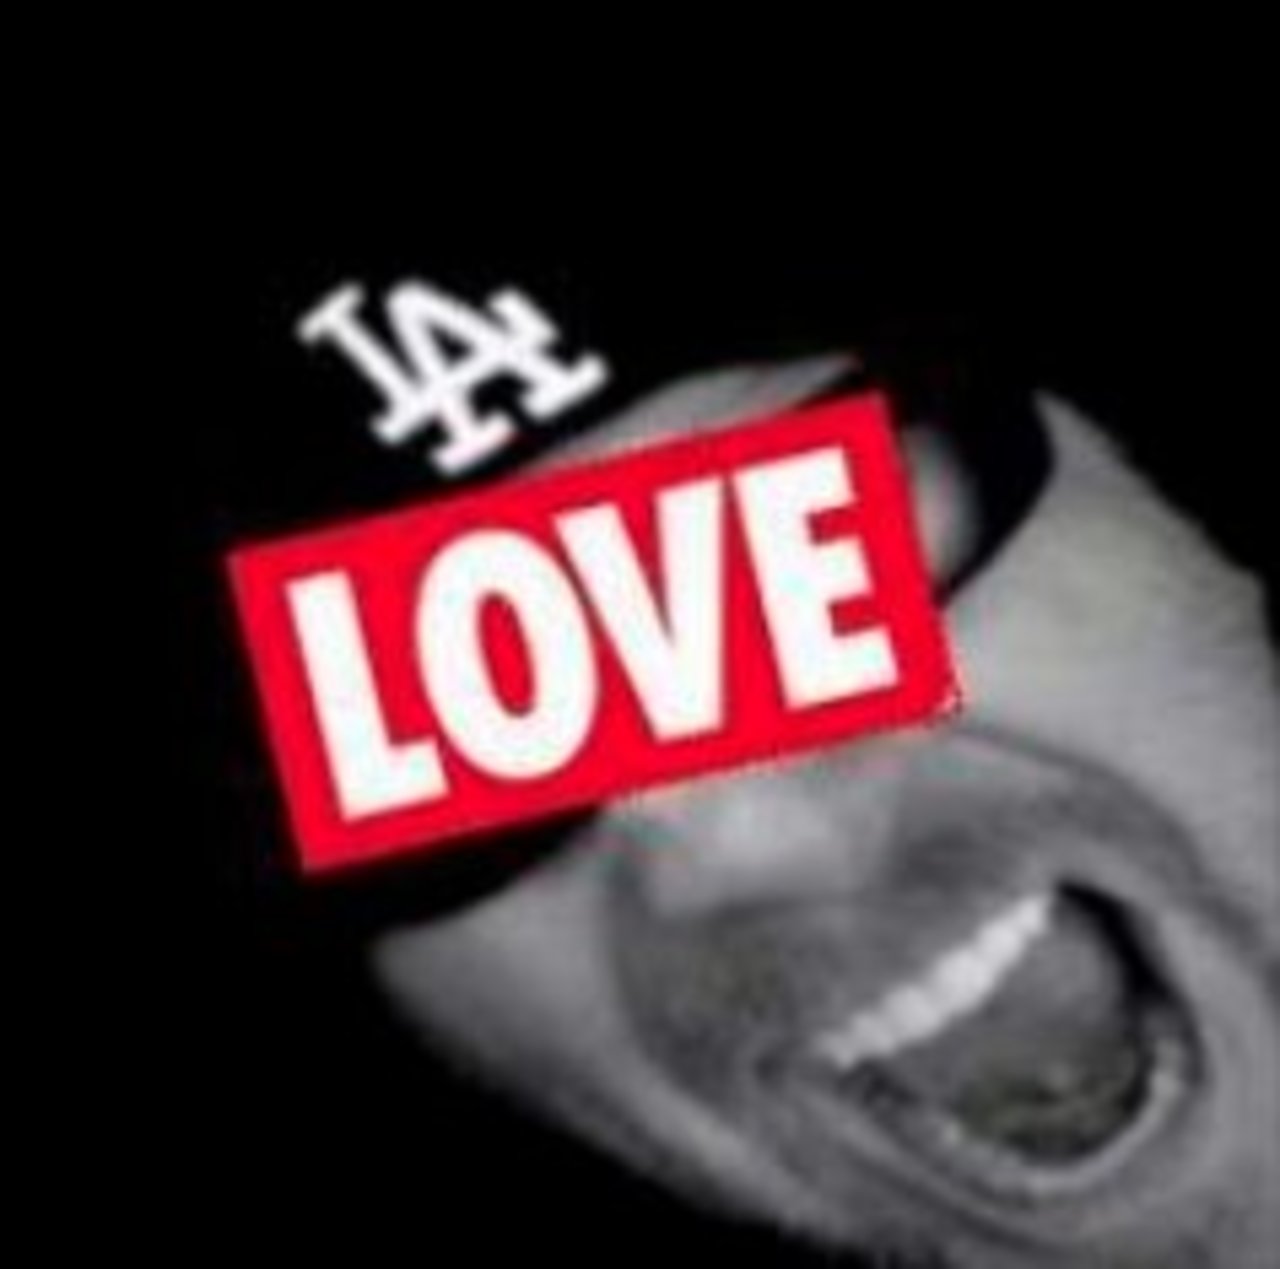 LOVE http://vaughnlive.tv/lorddietrich #music #chat #webcam #entrepreneur #art #graffiti #Underground #LA #LordDietrich https://t.co/4vMr6ZEYh4